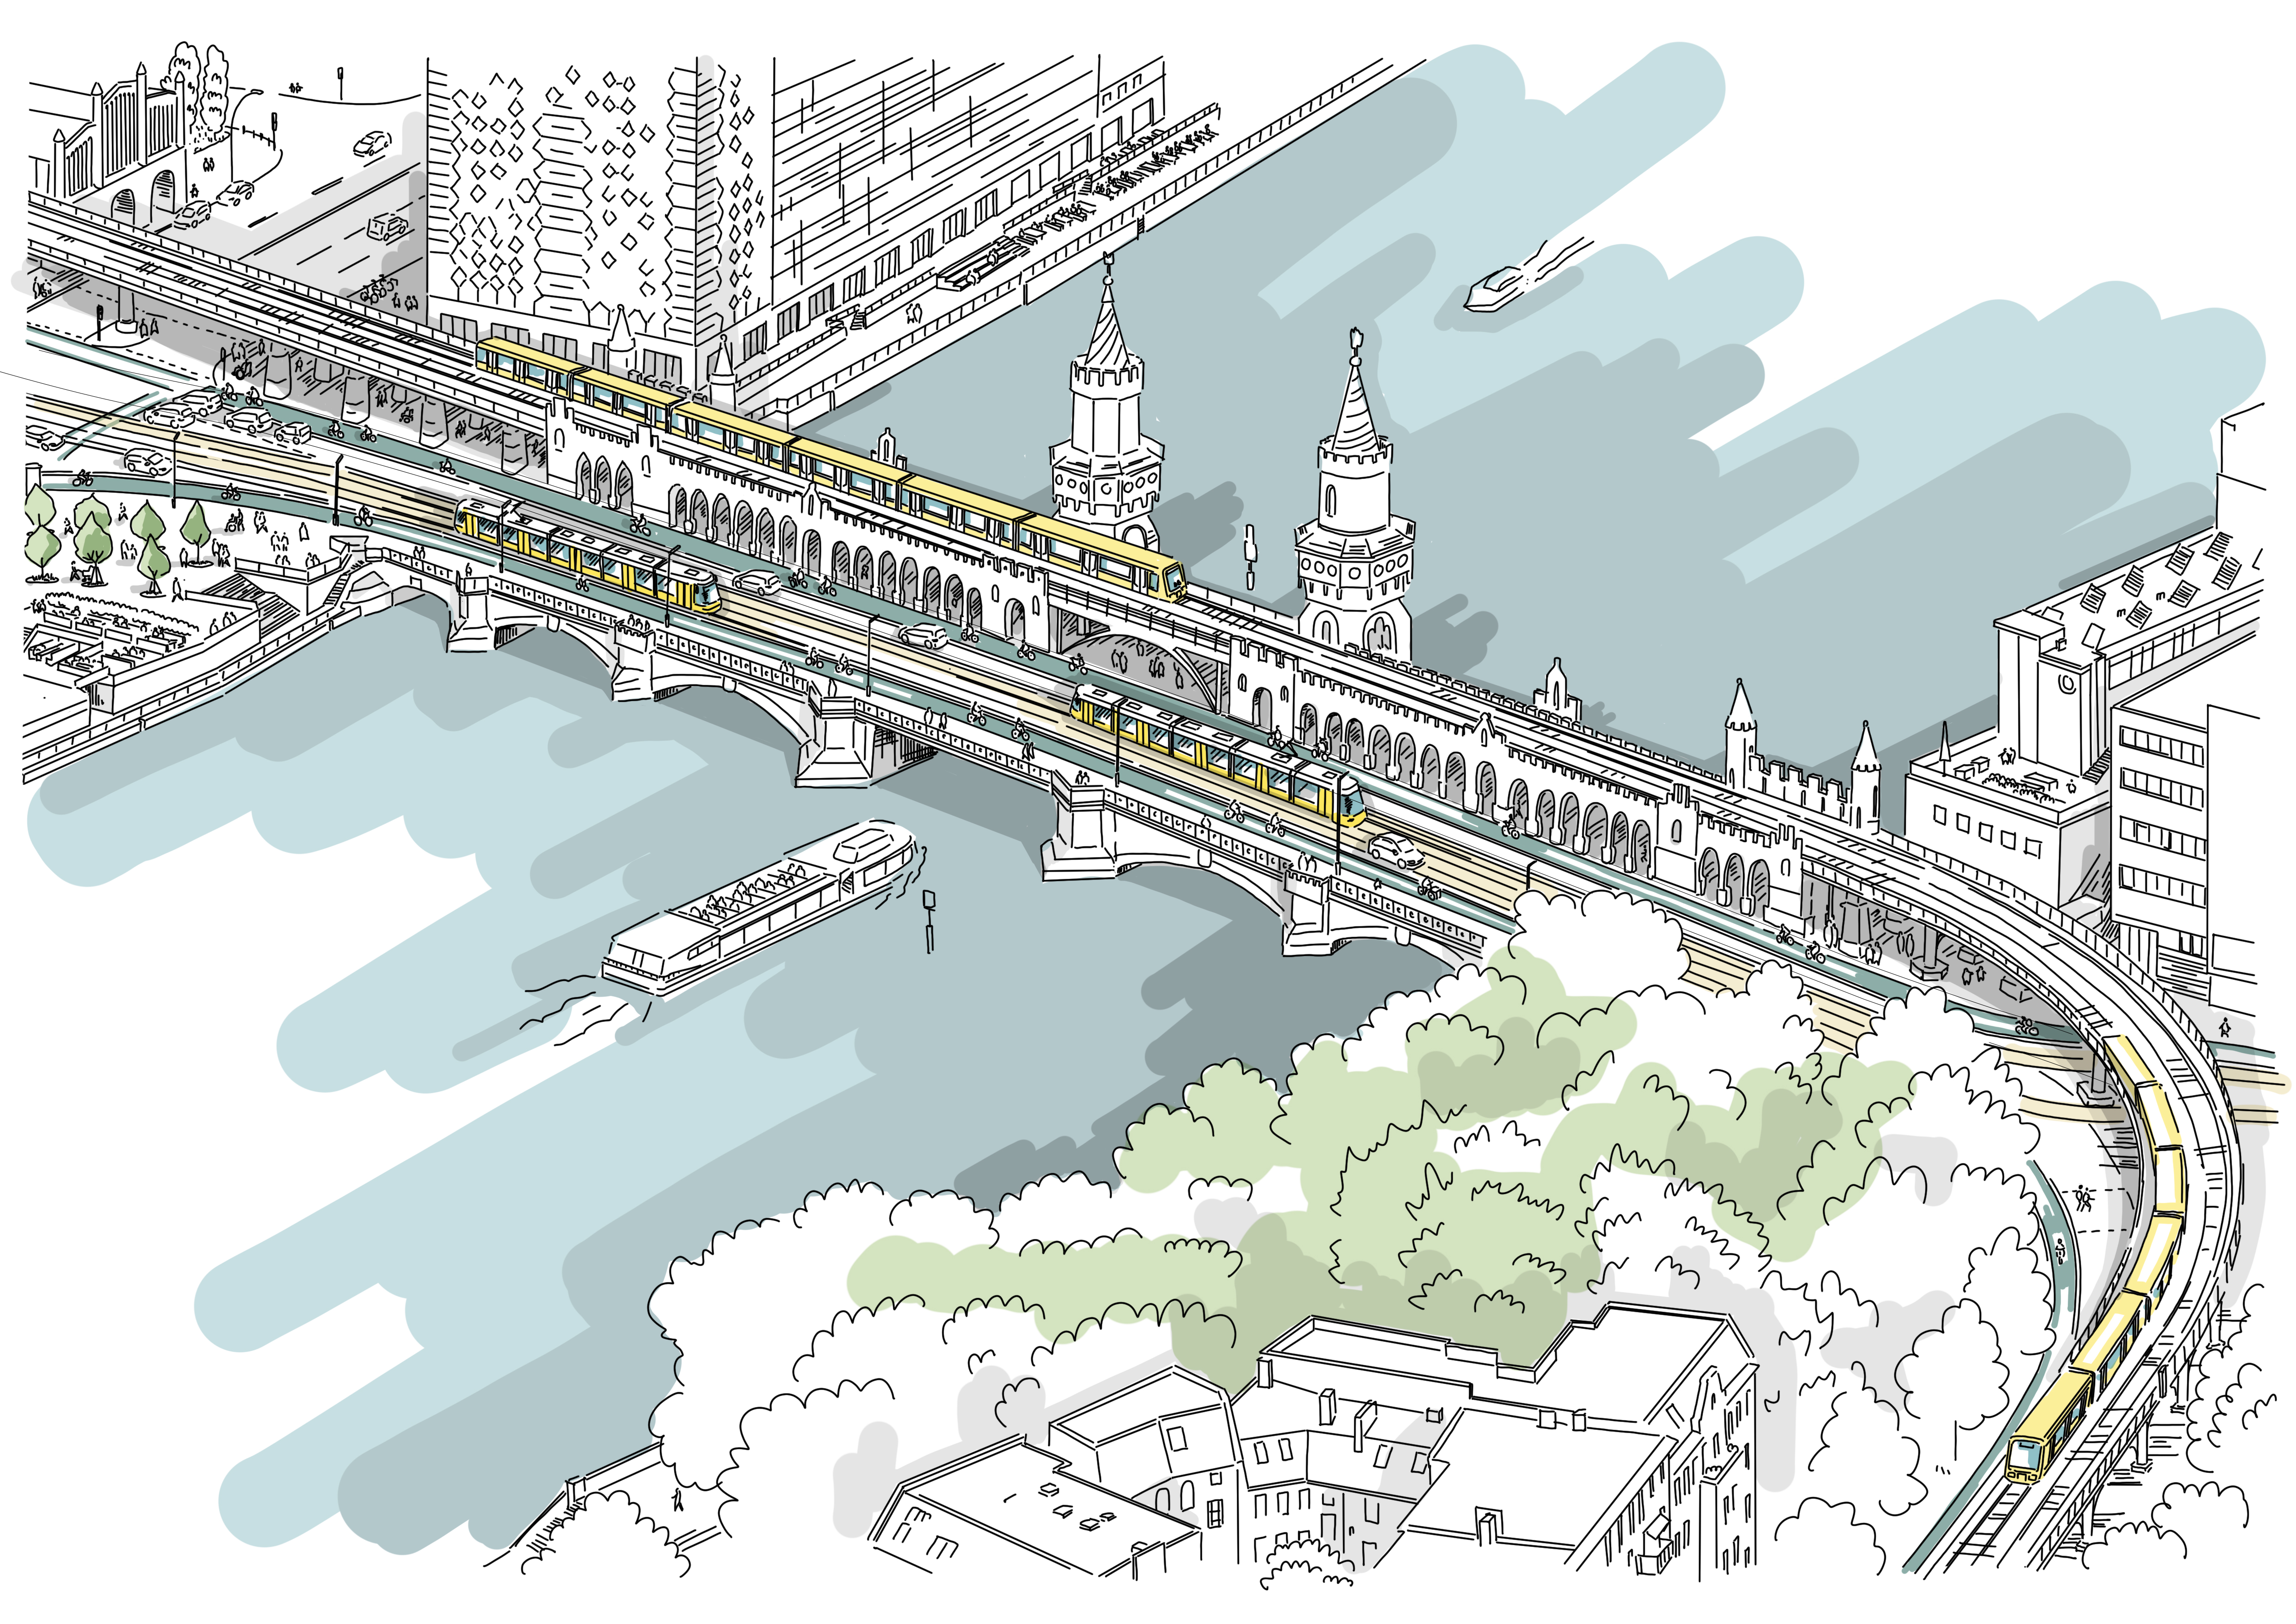 Diese Abbildung zeit eine skizzenhafte Darstellung der Oberbaumbrücke nach der Fertigstellung des Projekts